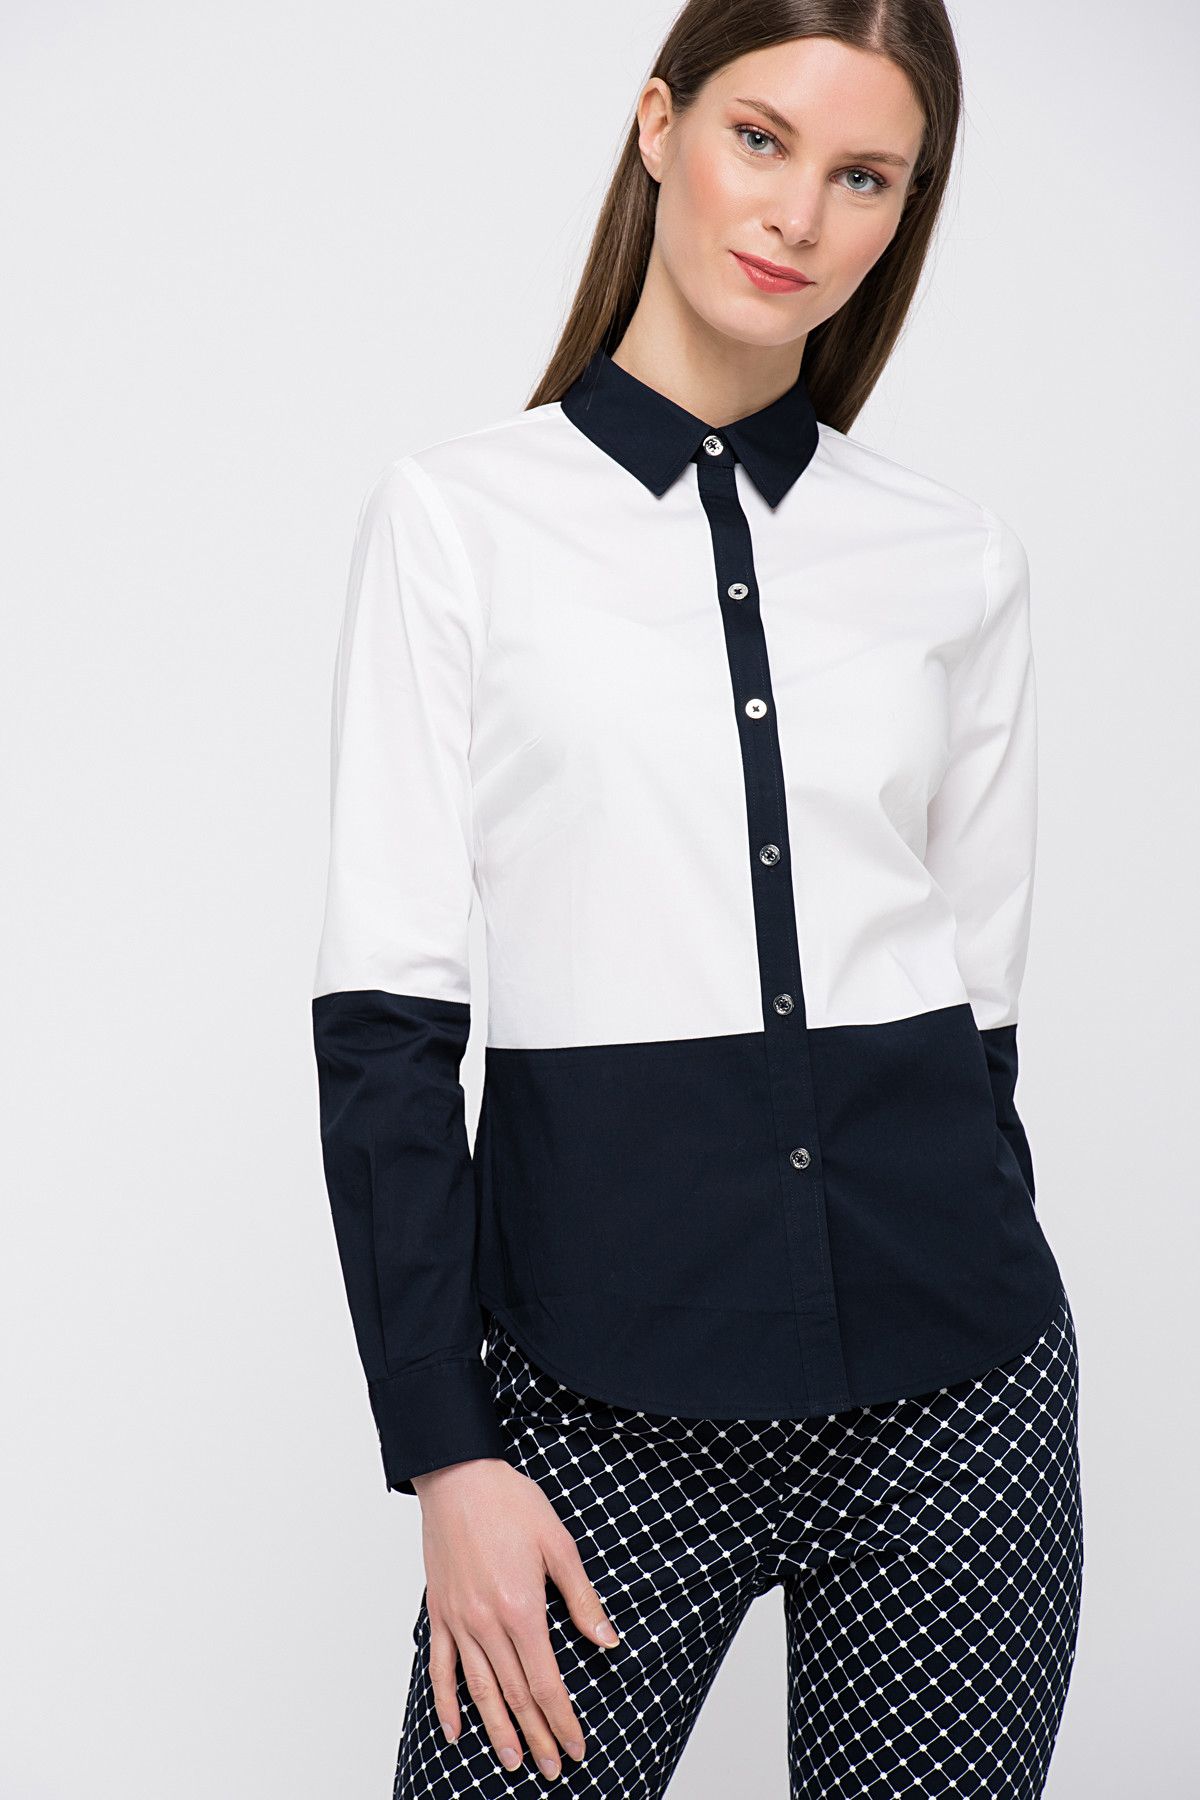 Nautica Kadın Siyah-Beyaz Gömlek 529W201